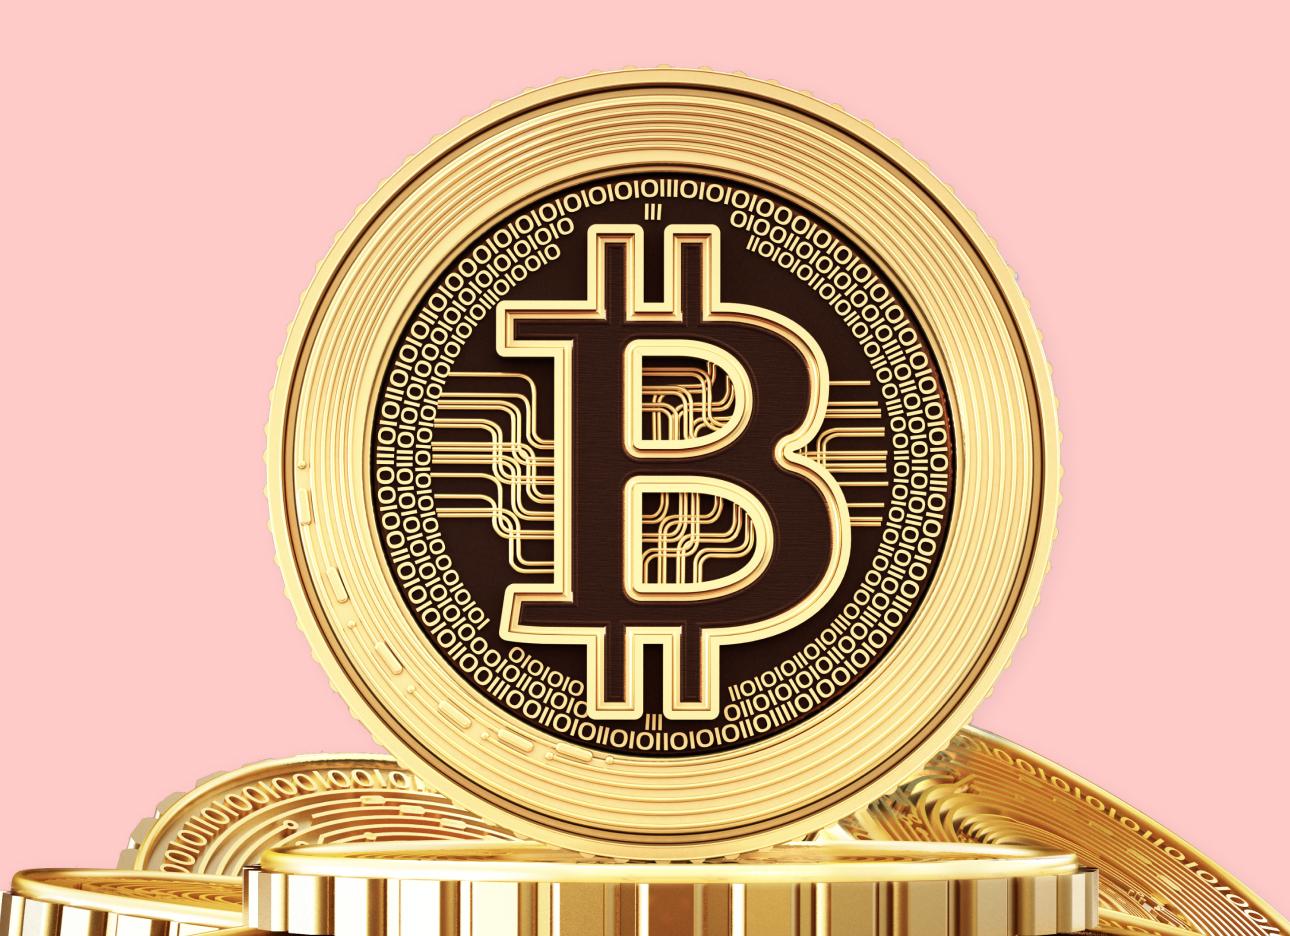 Bitcoin Weekly News - Bitcoin Weekly Updates